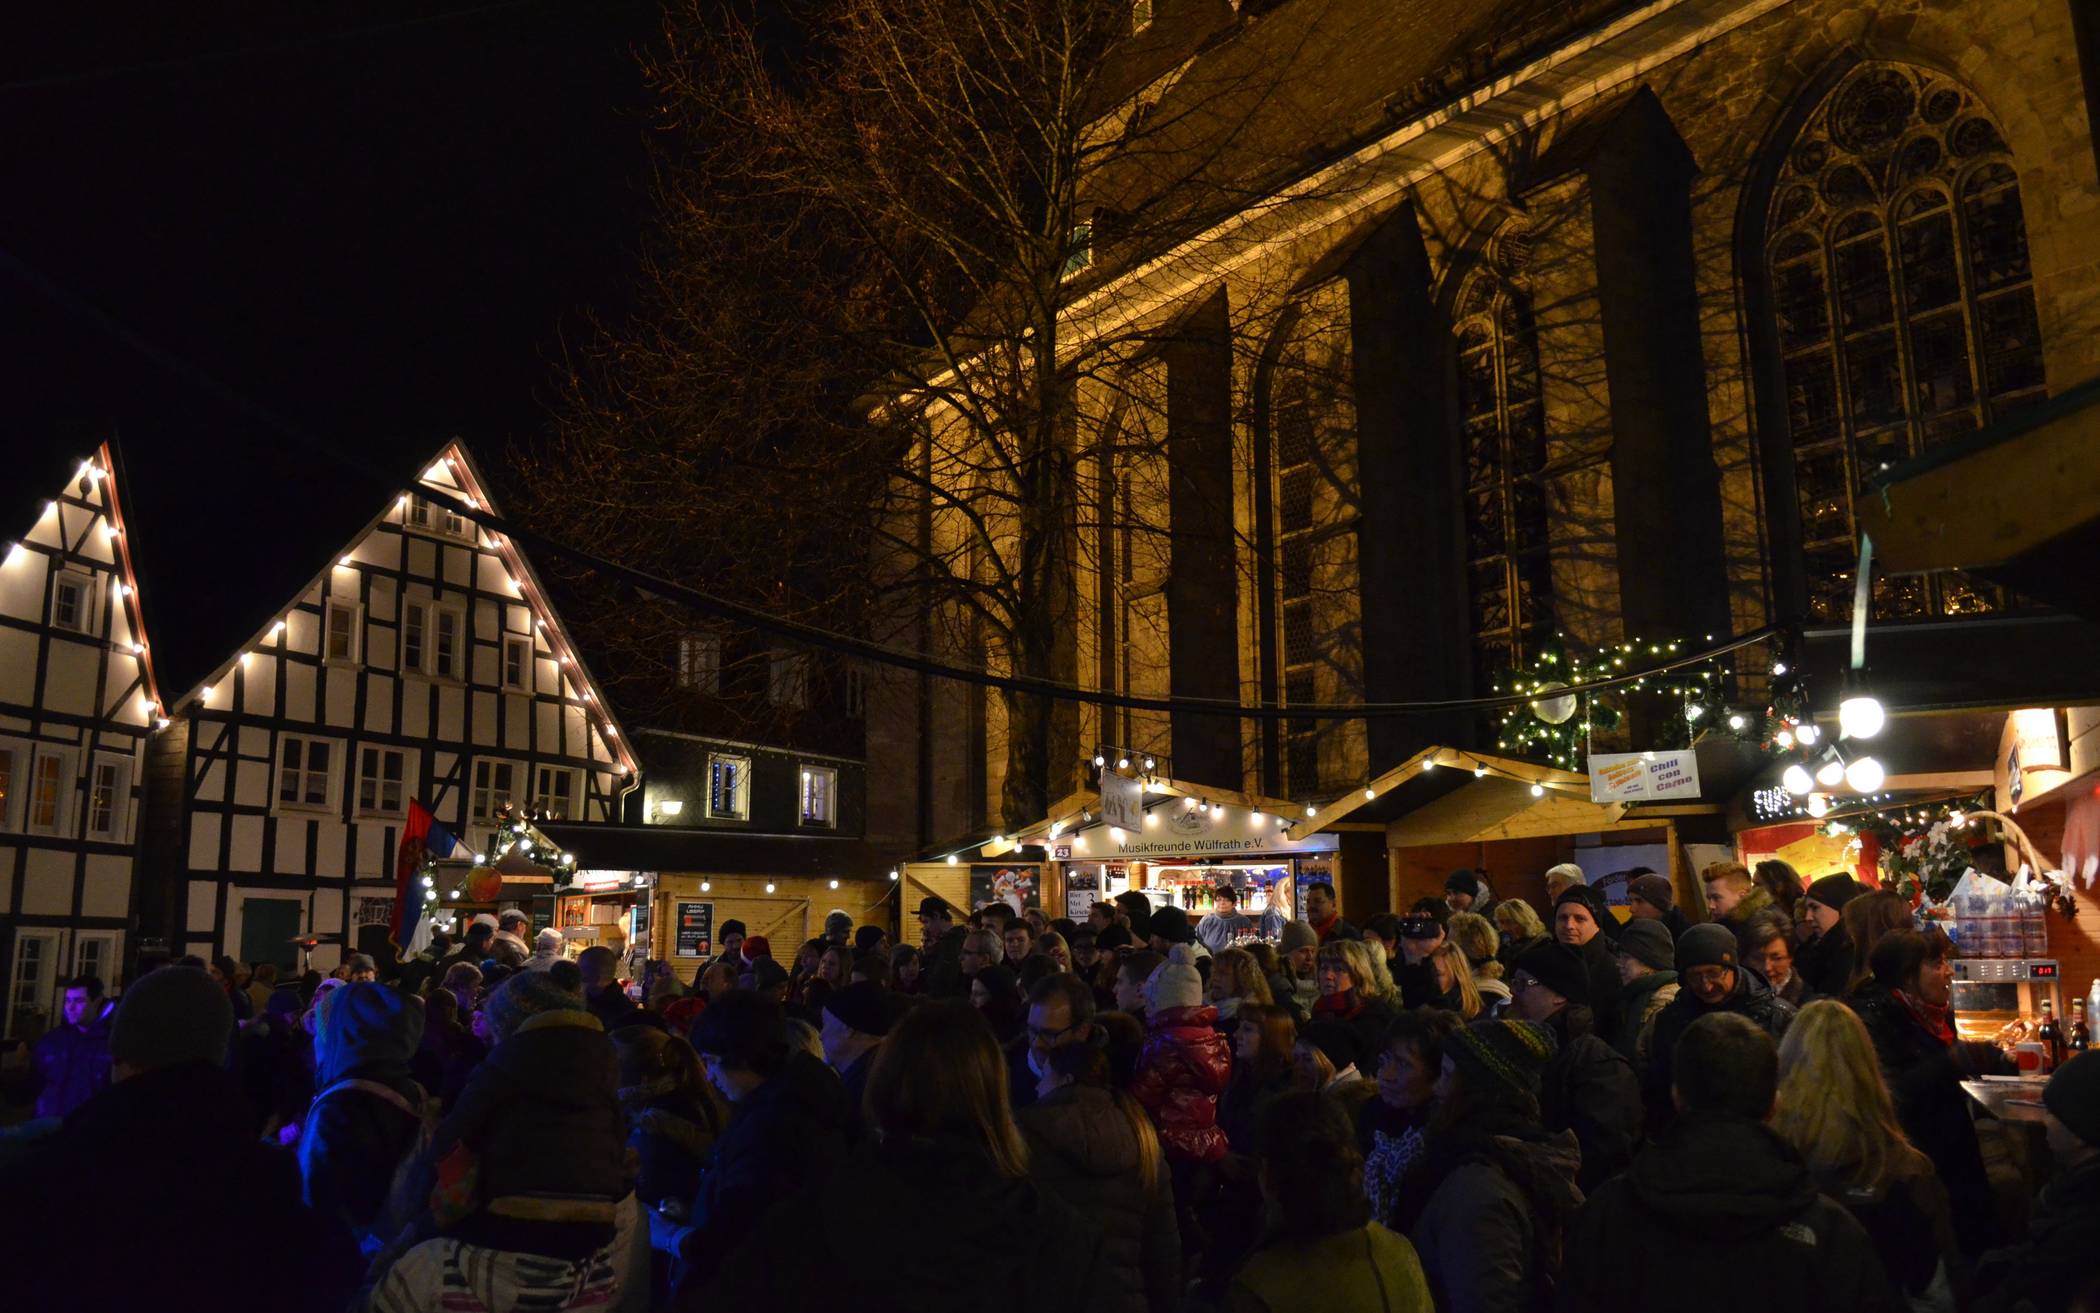  Der Herzog-Wilhelm-Markt in Wülfrath gilt mit Charme und traditionellem Kunsthandwerk als ältester Weihnachtsmarkt der Region. 